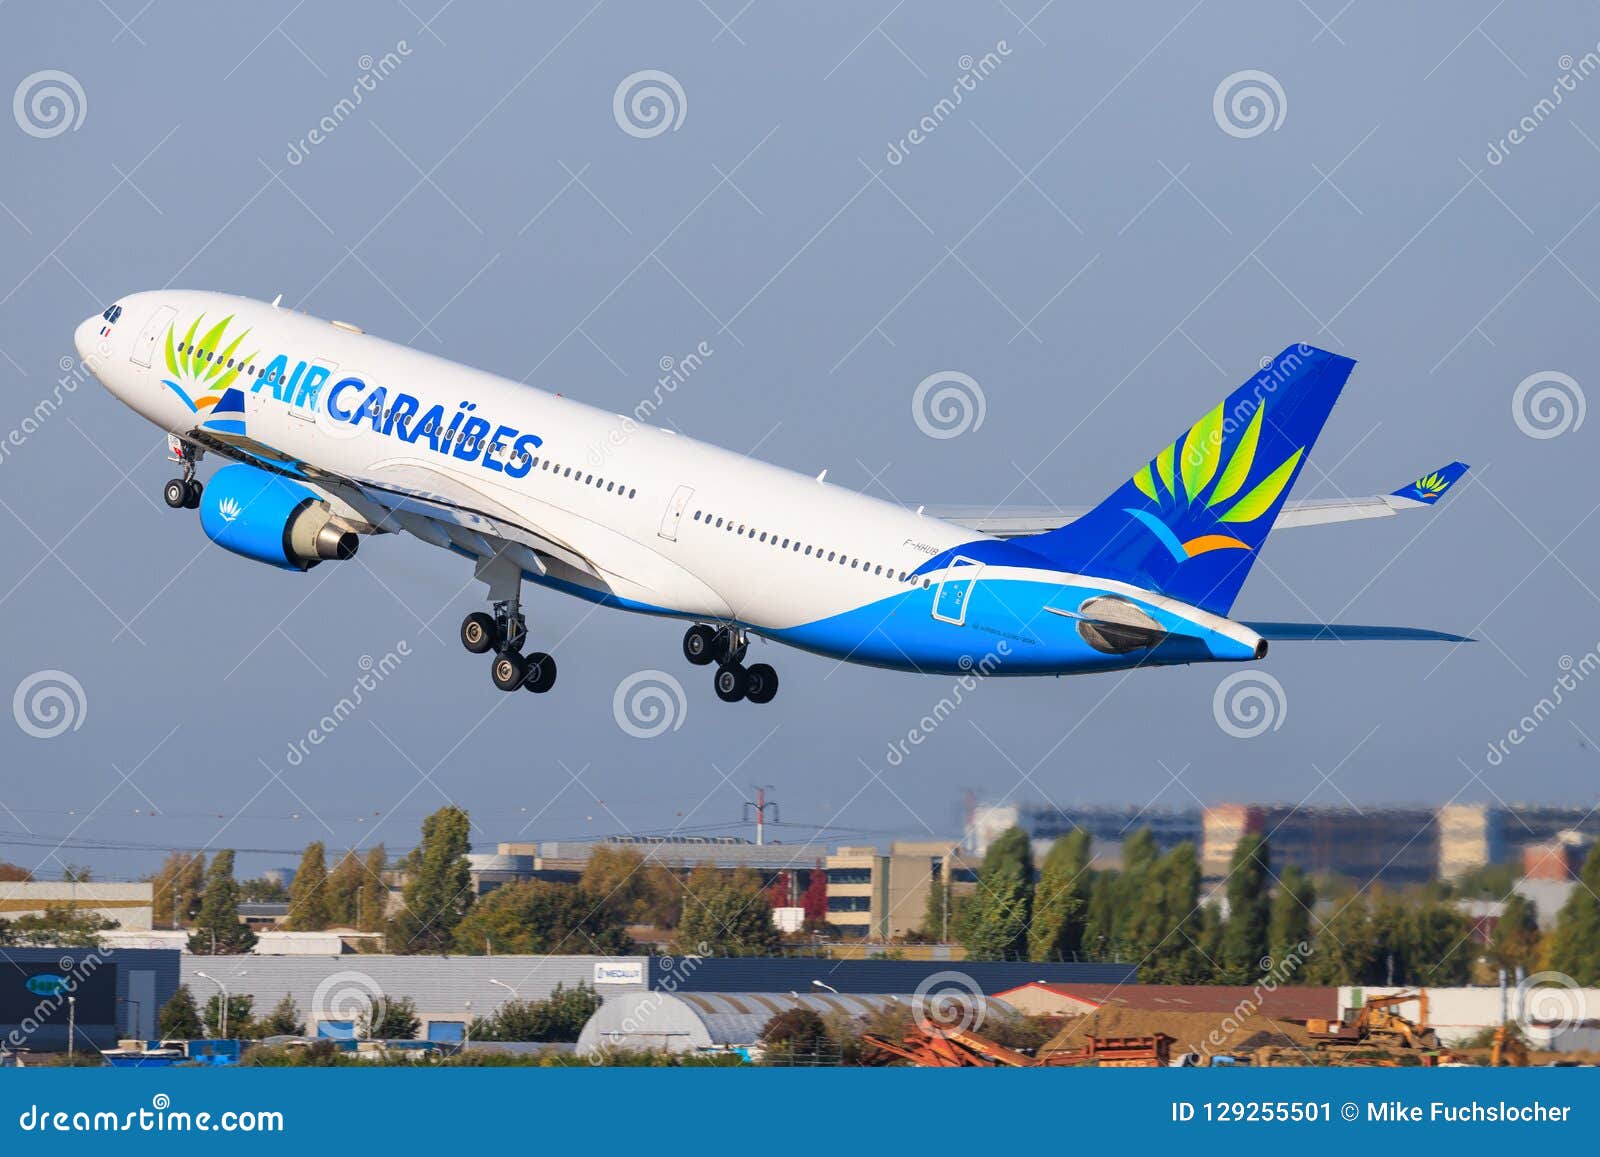 Phoenix 1:400 Airbus A350-900 Air Caraibes 加勒比航空 PH11367 F-HHAV 的照片 作者:faks - 飞机模型世界资料库